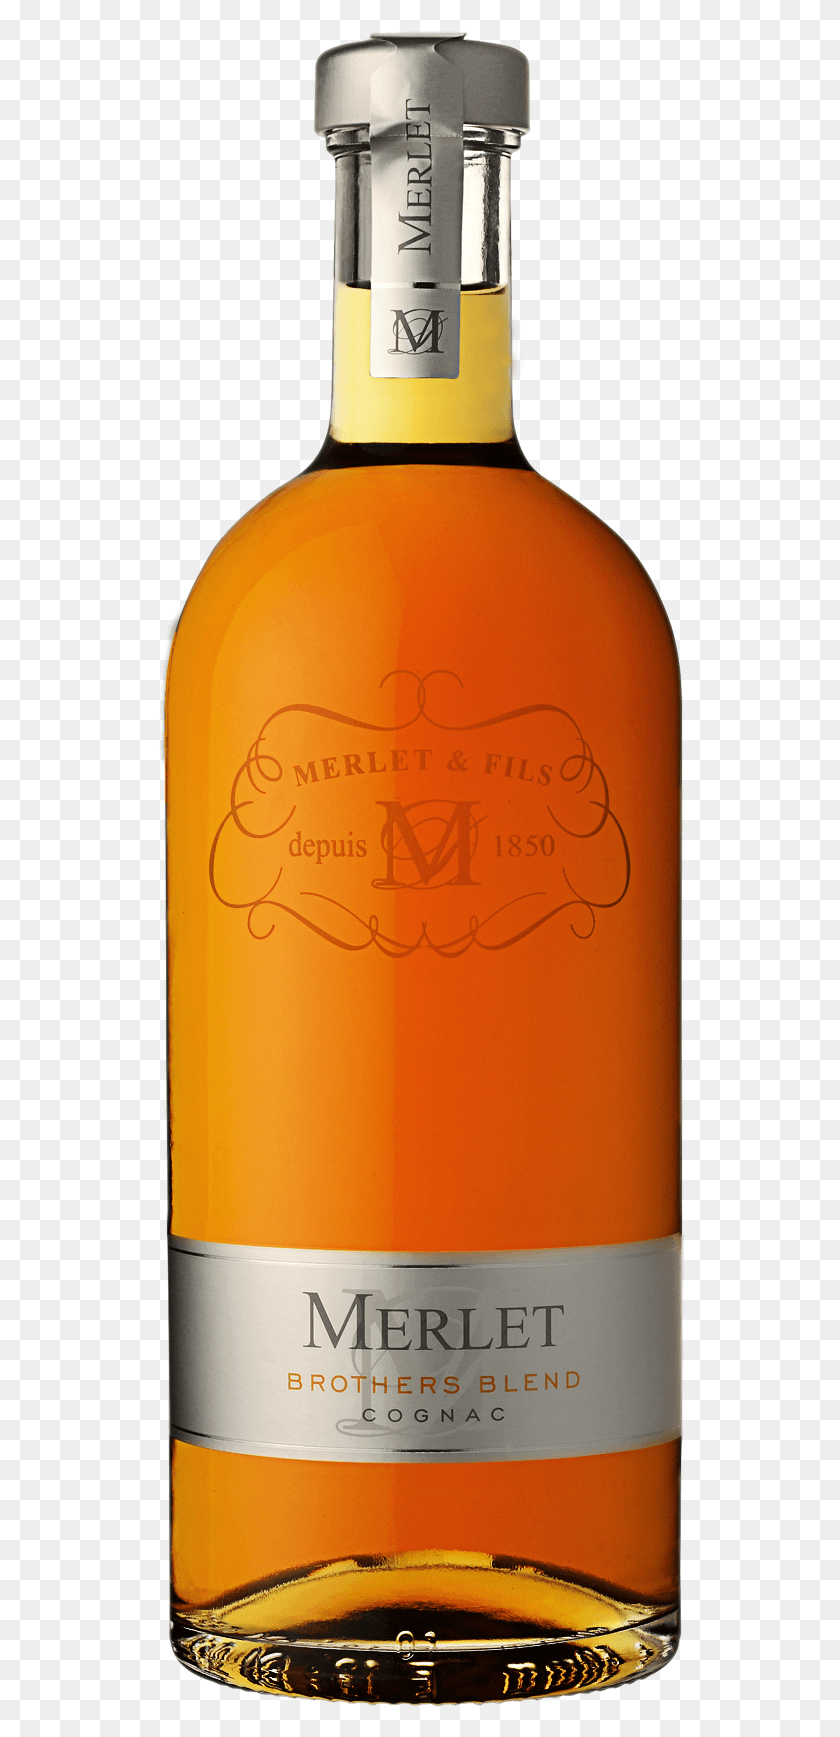 528x1677 Descargar Png Cognac Merlet Brothers Blend Cognac, Botella, Bebida, Bebida Hd Png